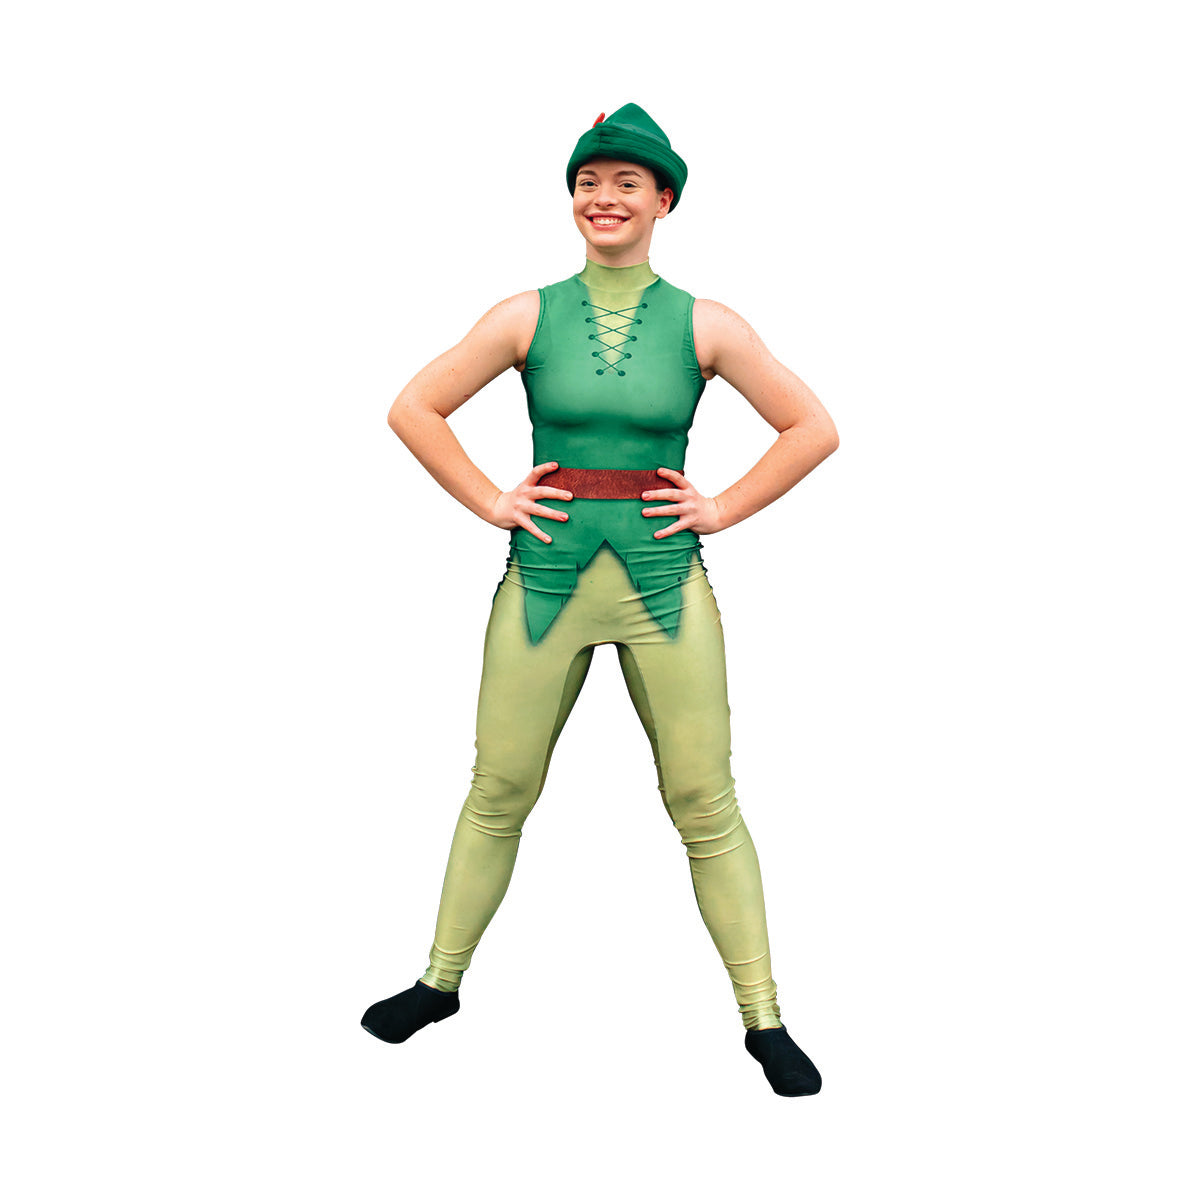 Peter Pan bodysuit costume